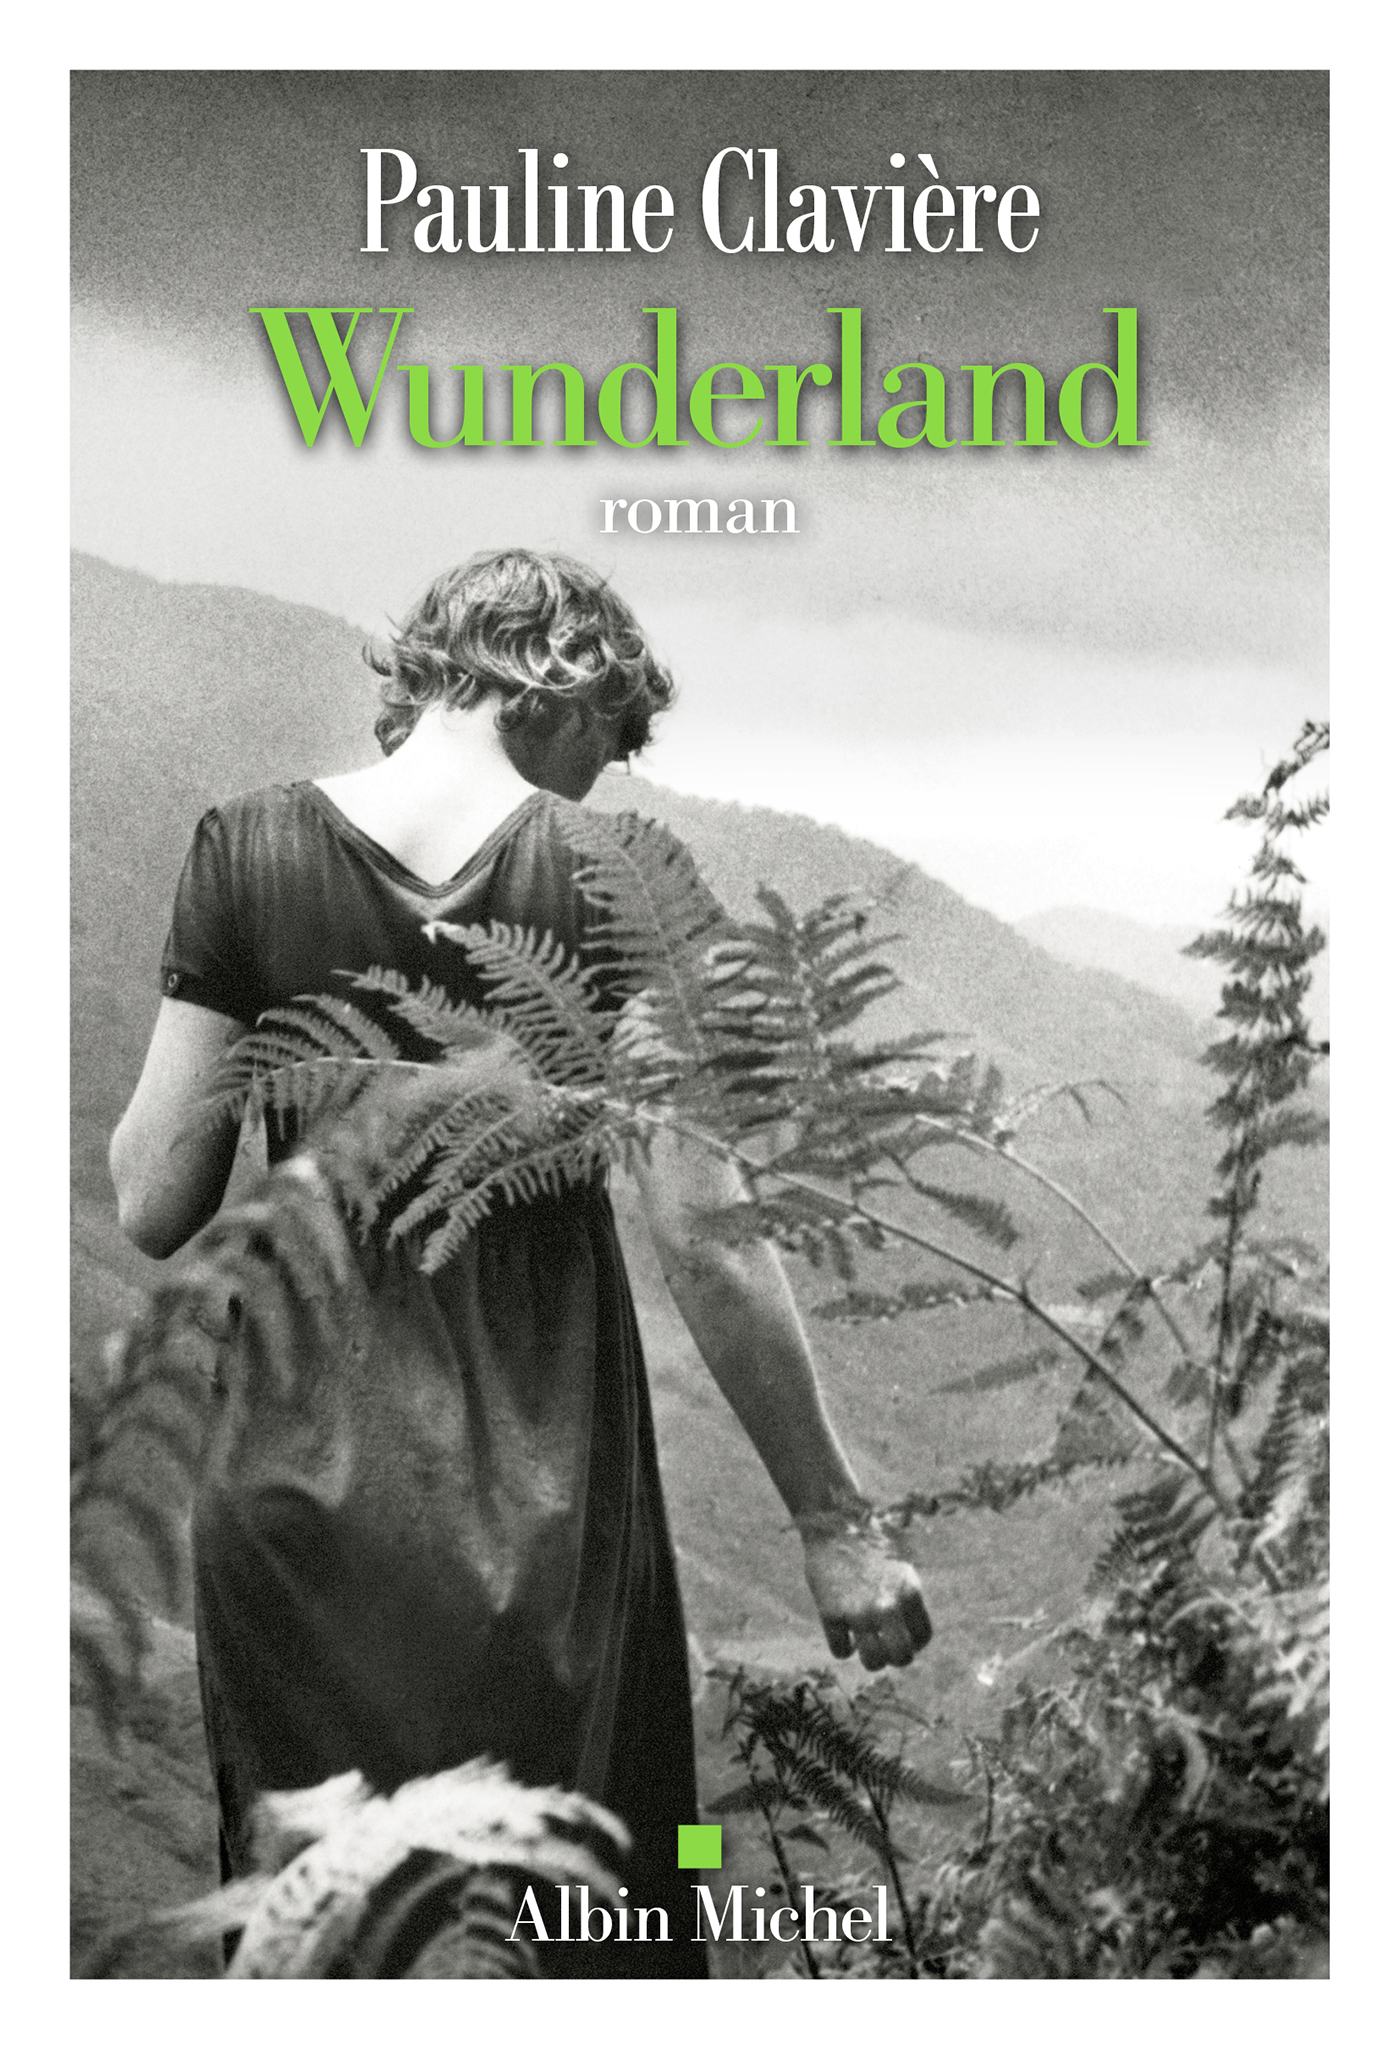 Couverture du livre Wunderland